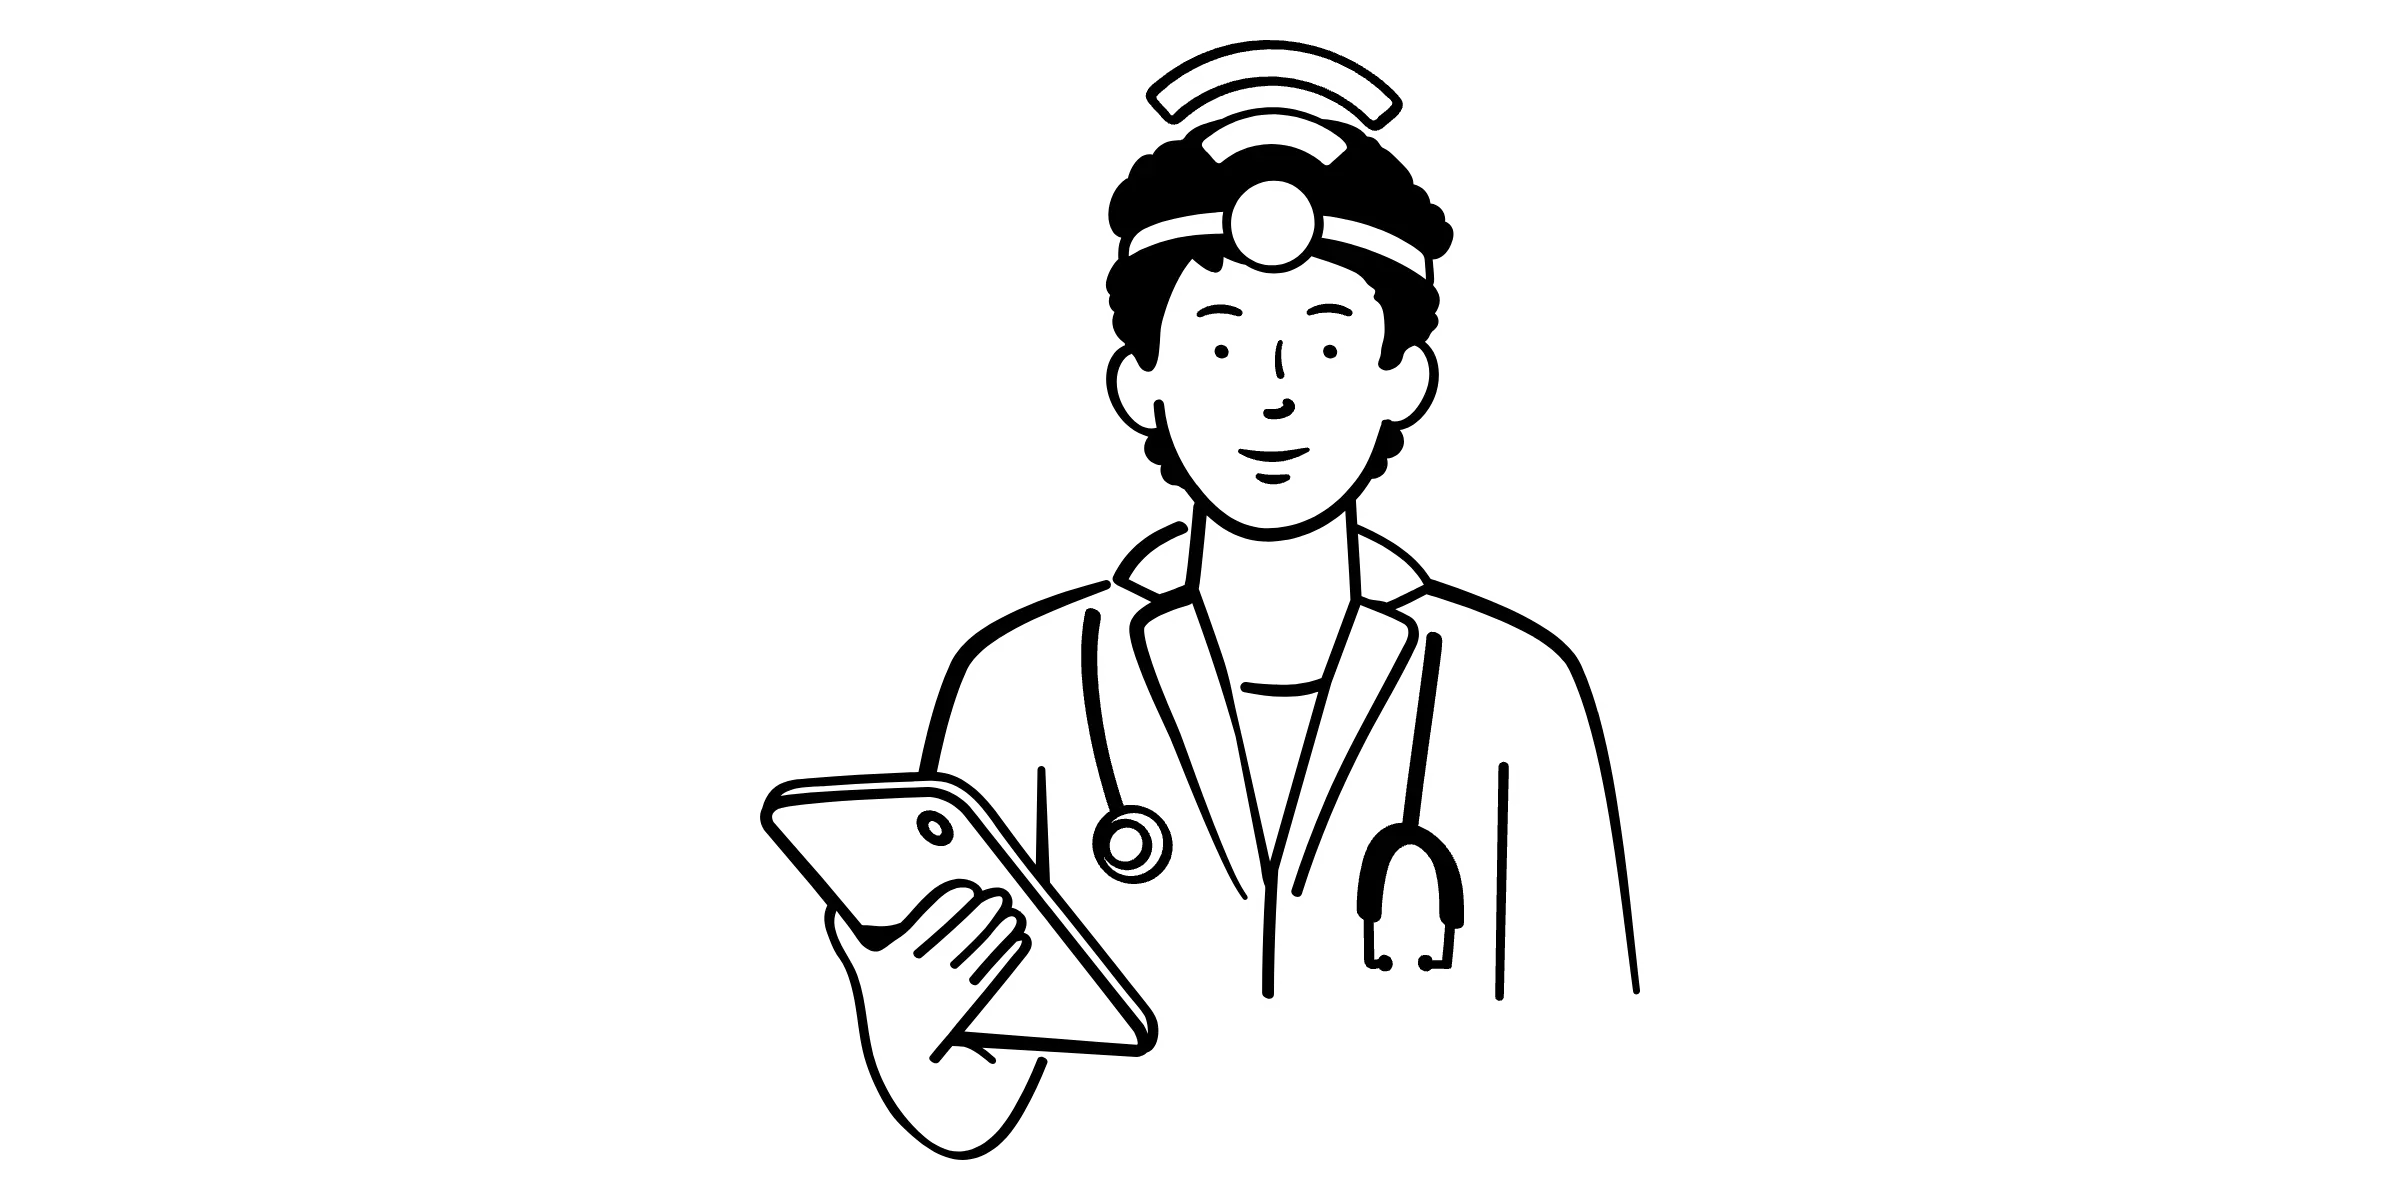 Lijntekening van een dokter met een tablet in de hand en een wifi-signaal boven het voorhoofd.